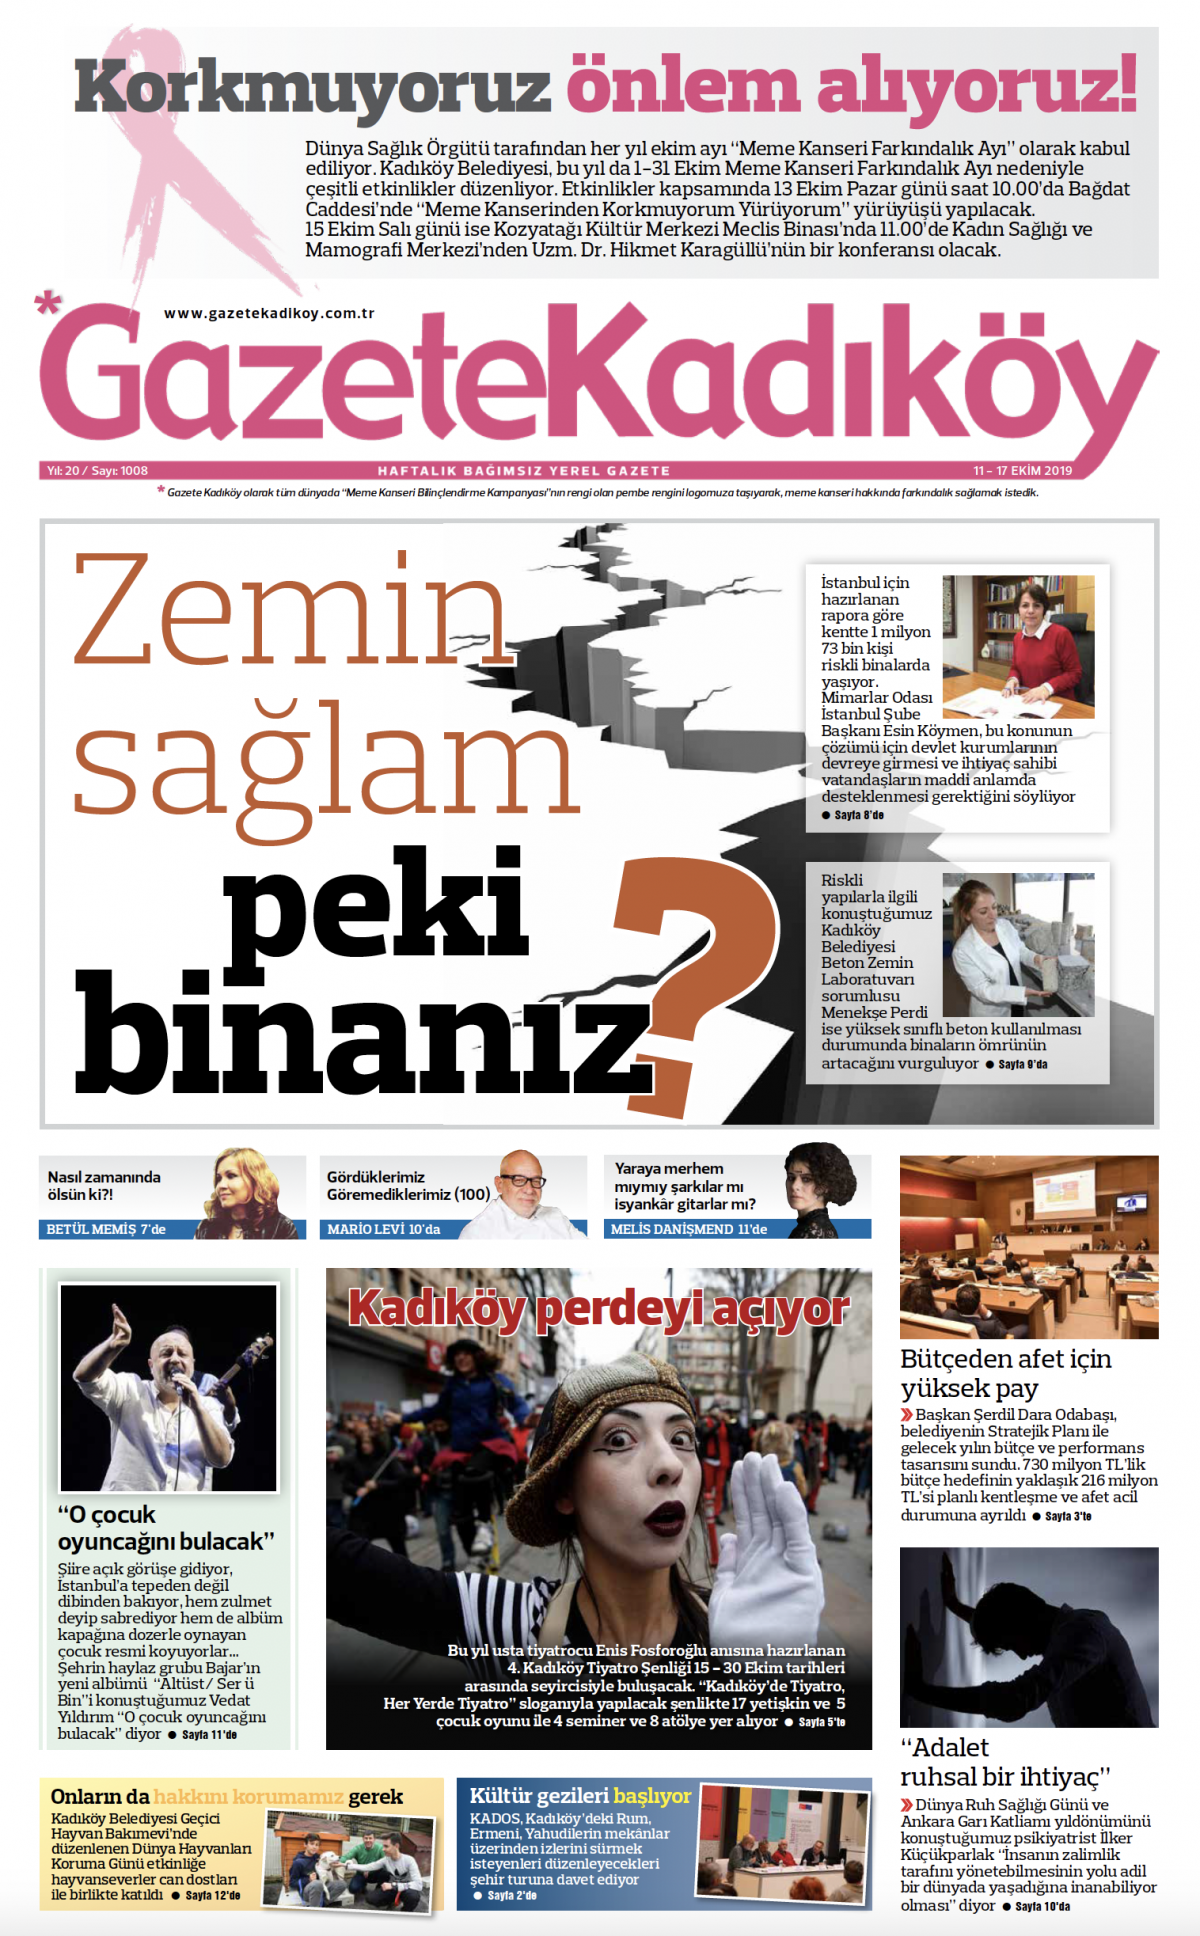 Gazete Kadıköy - 1008. Sayı